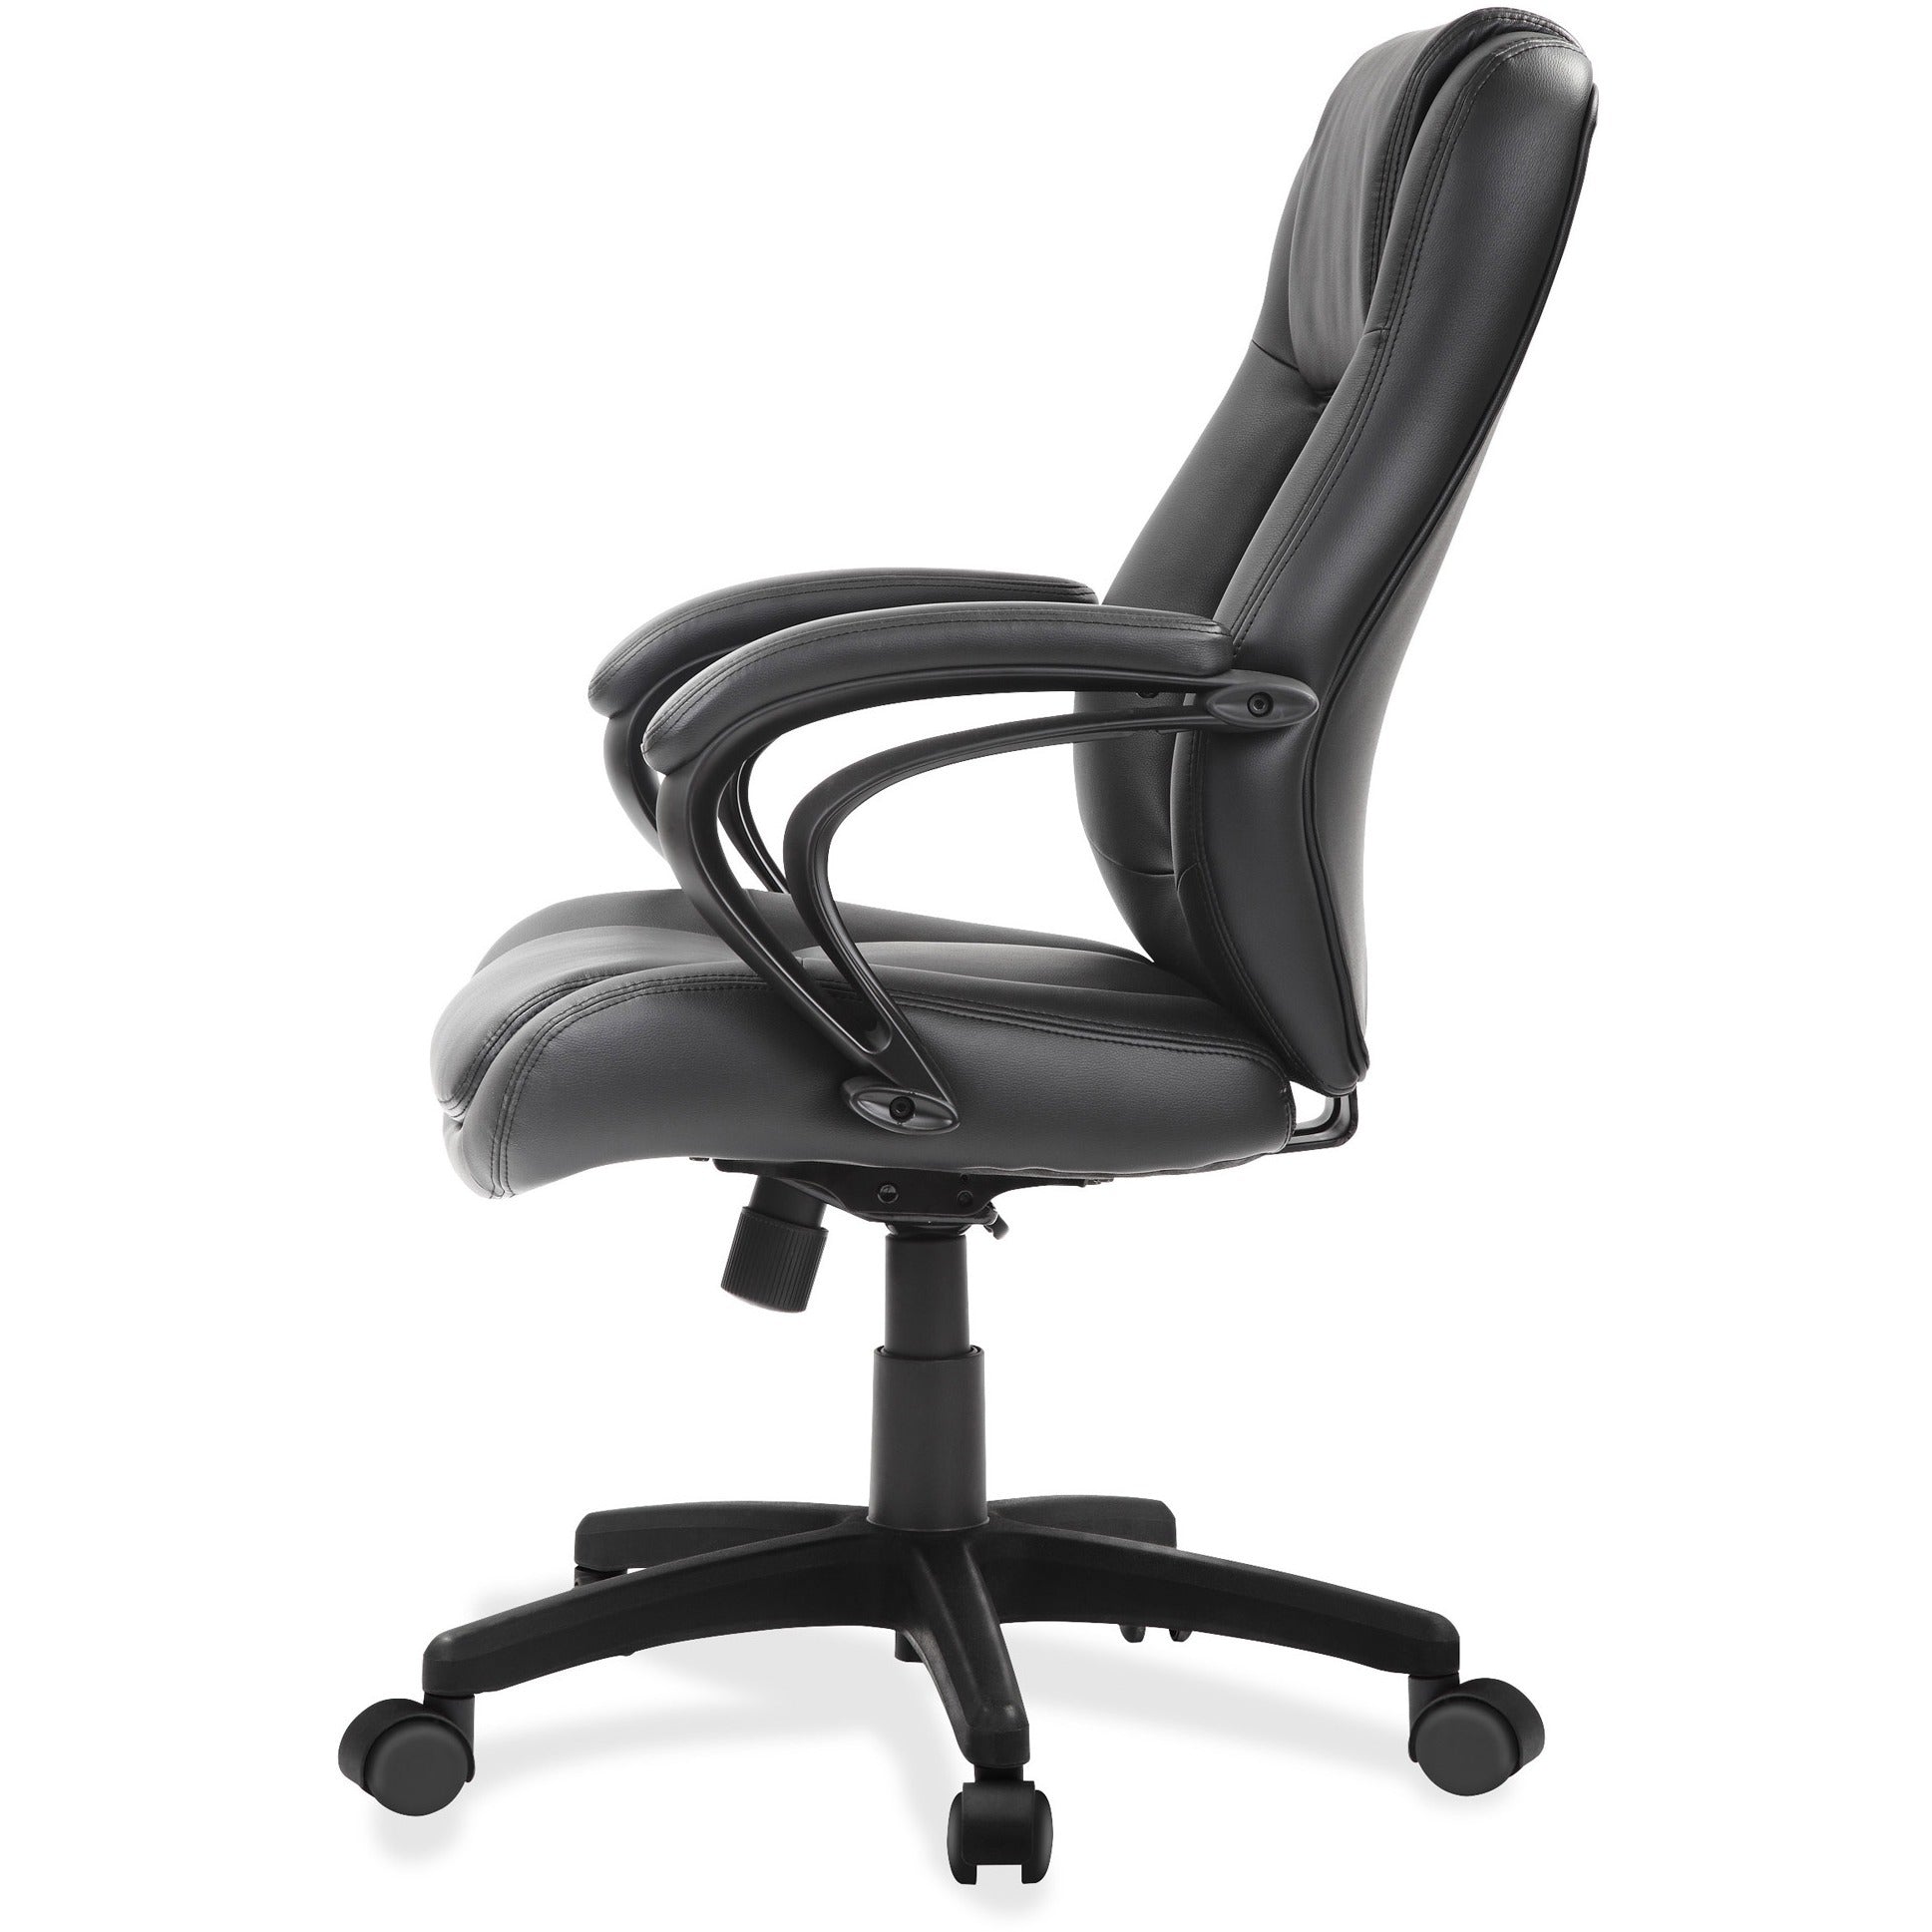 eurotech-pembroke-mid-back-executive-chair-black-bonded-leather-seat-black-bonded-leather-back-low-back-5-star-base-1-each_eutle522 - 3